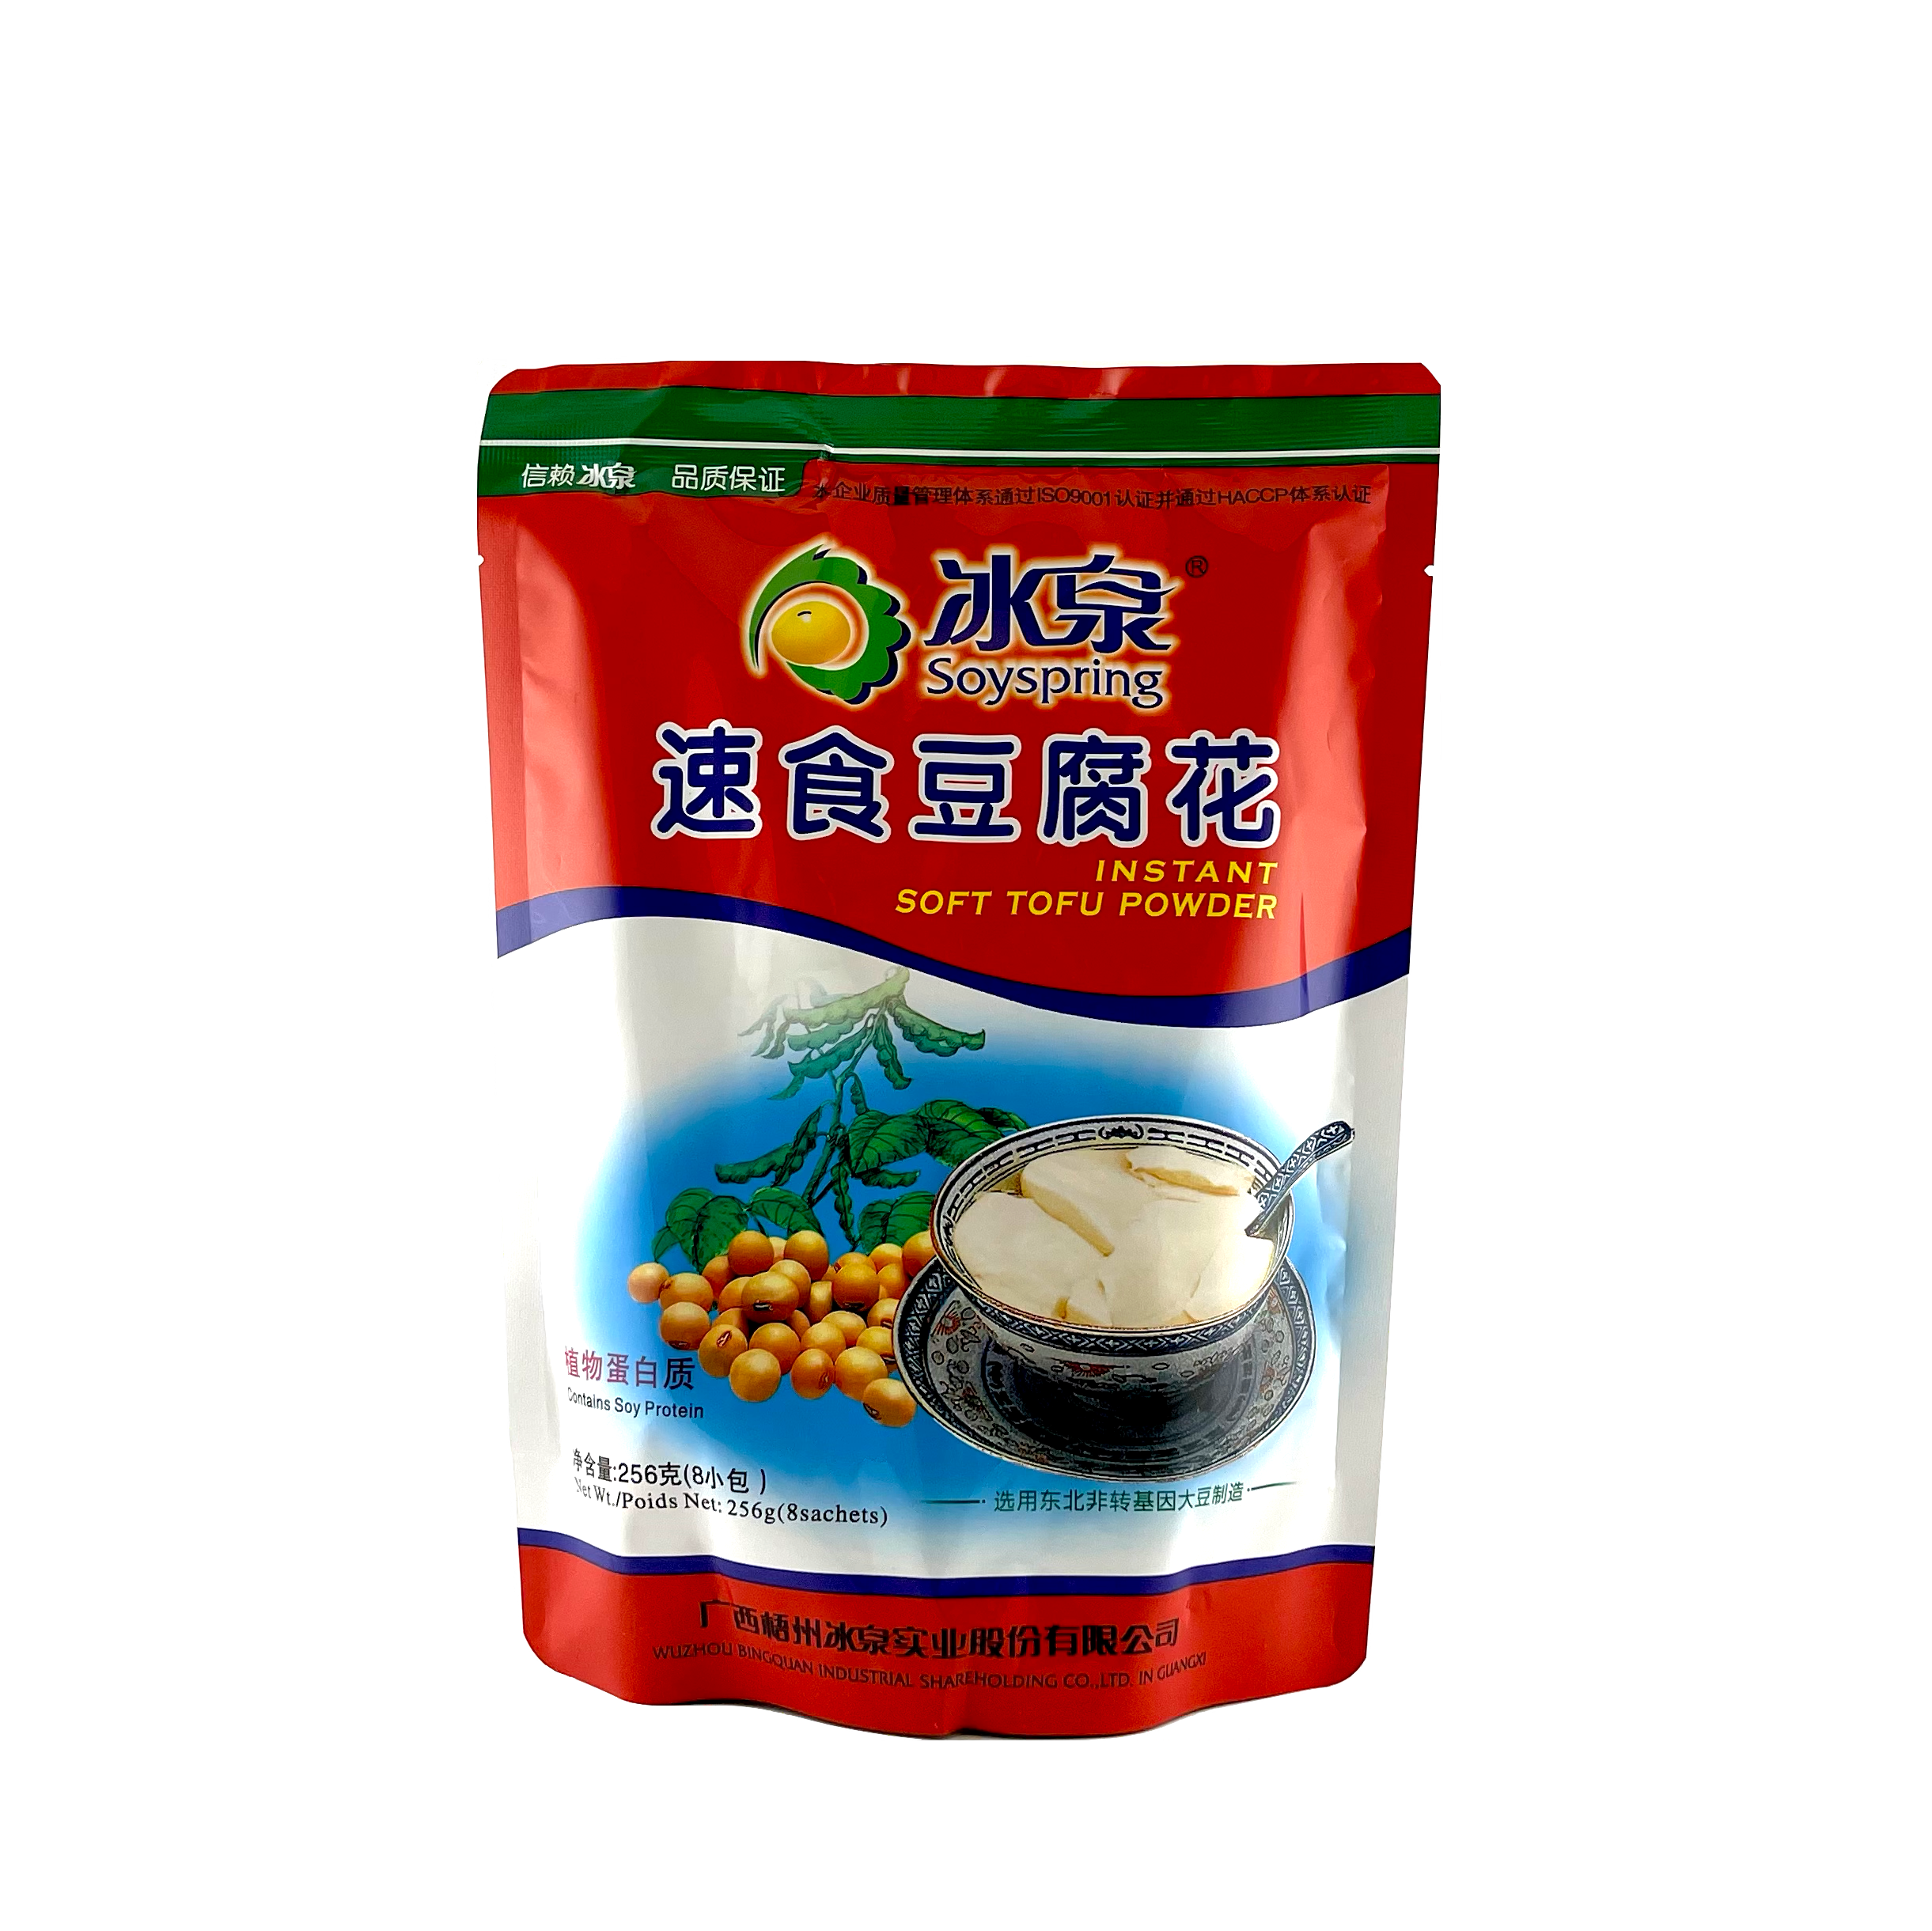 Instant Soft Tofu Powder 256g Soyspring China